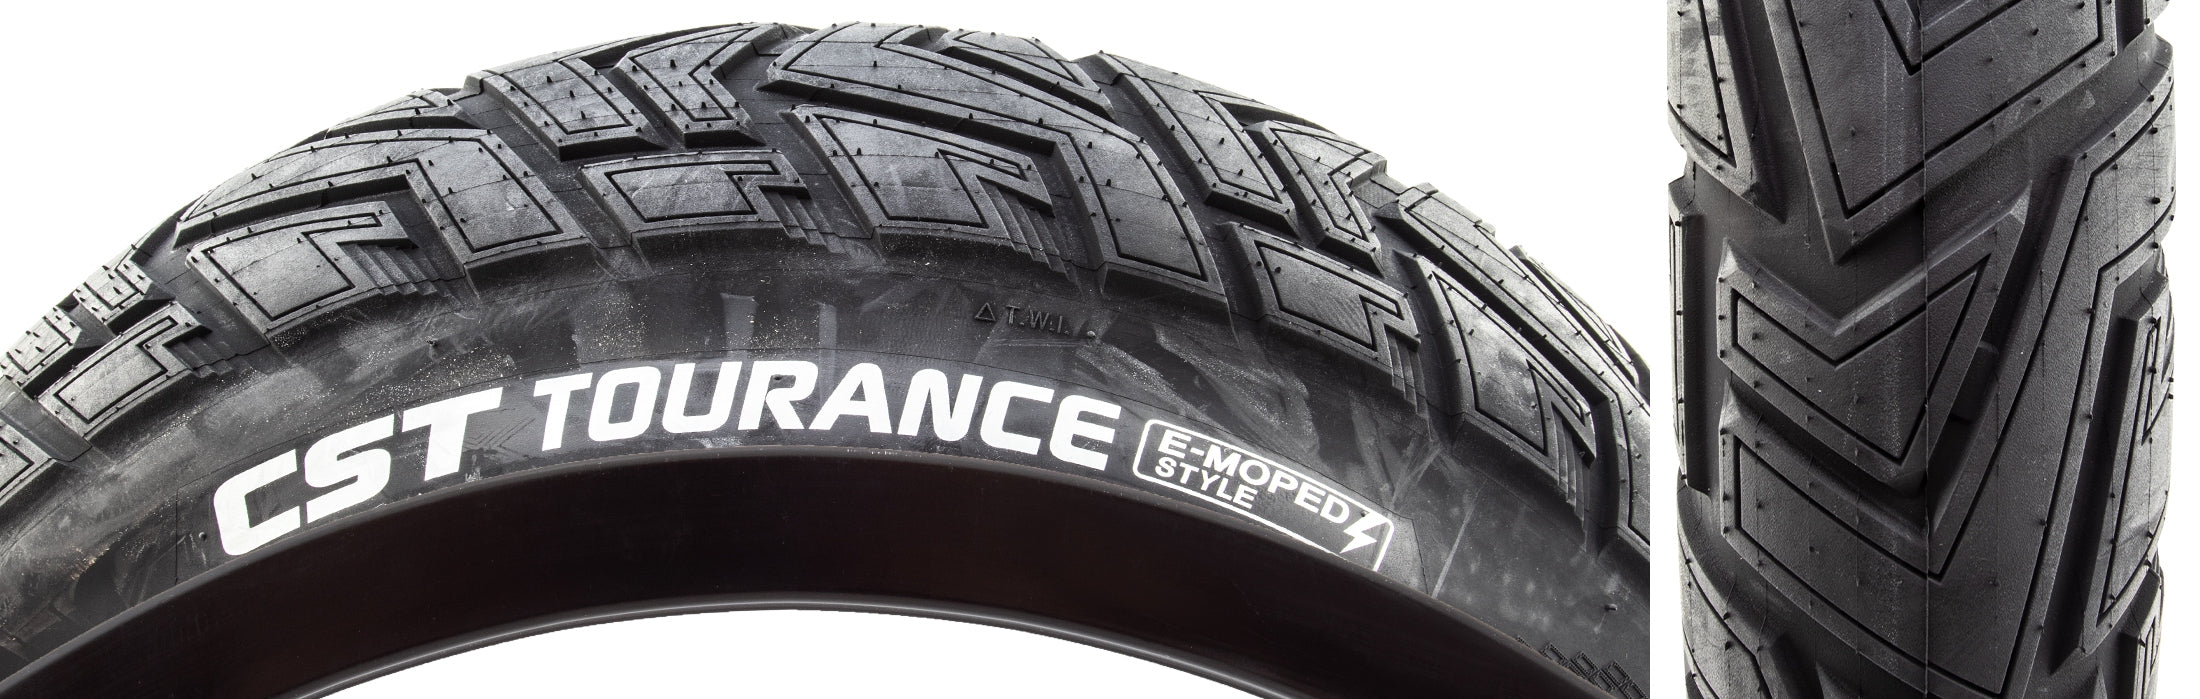 CST Tourance Tire 20 x 4.0